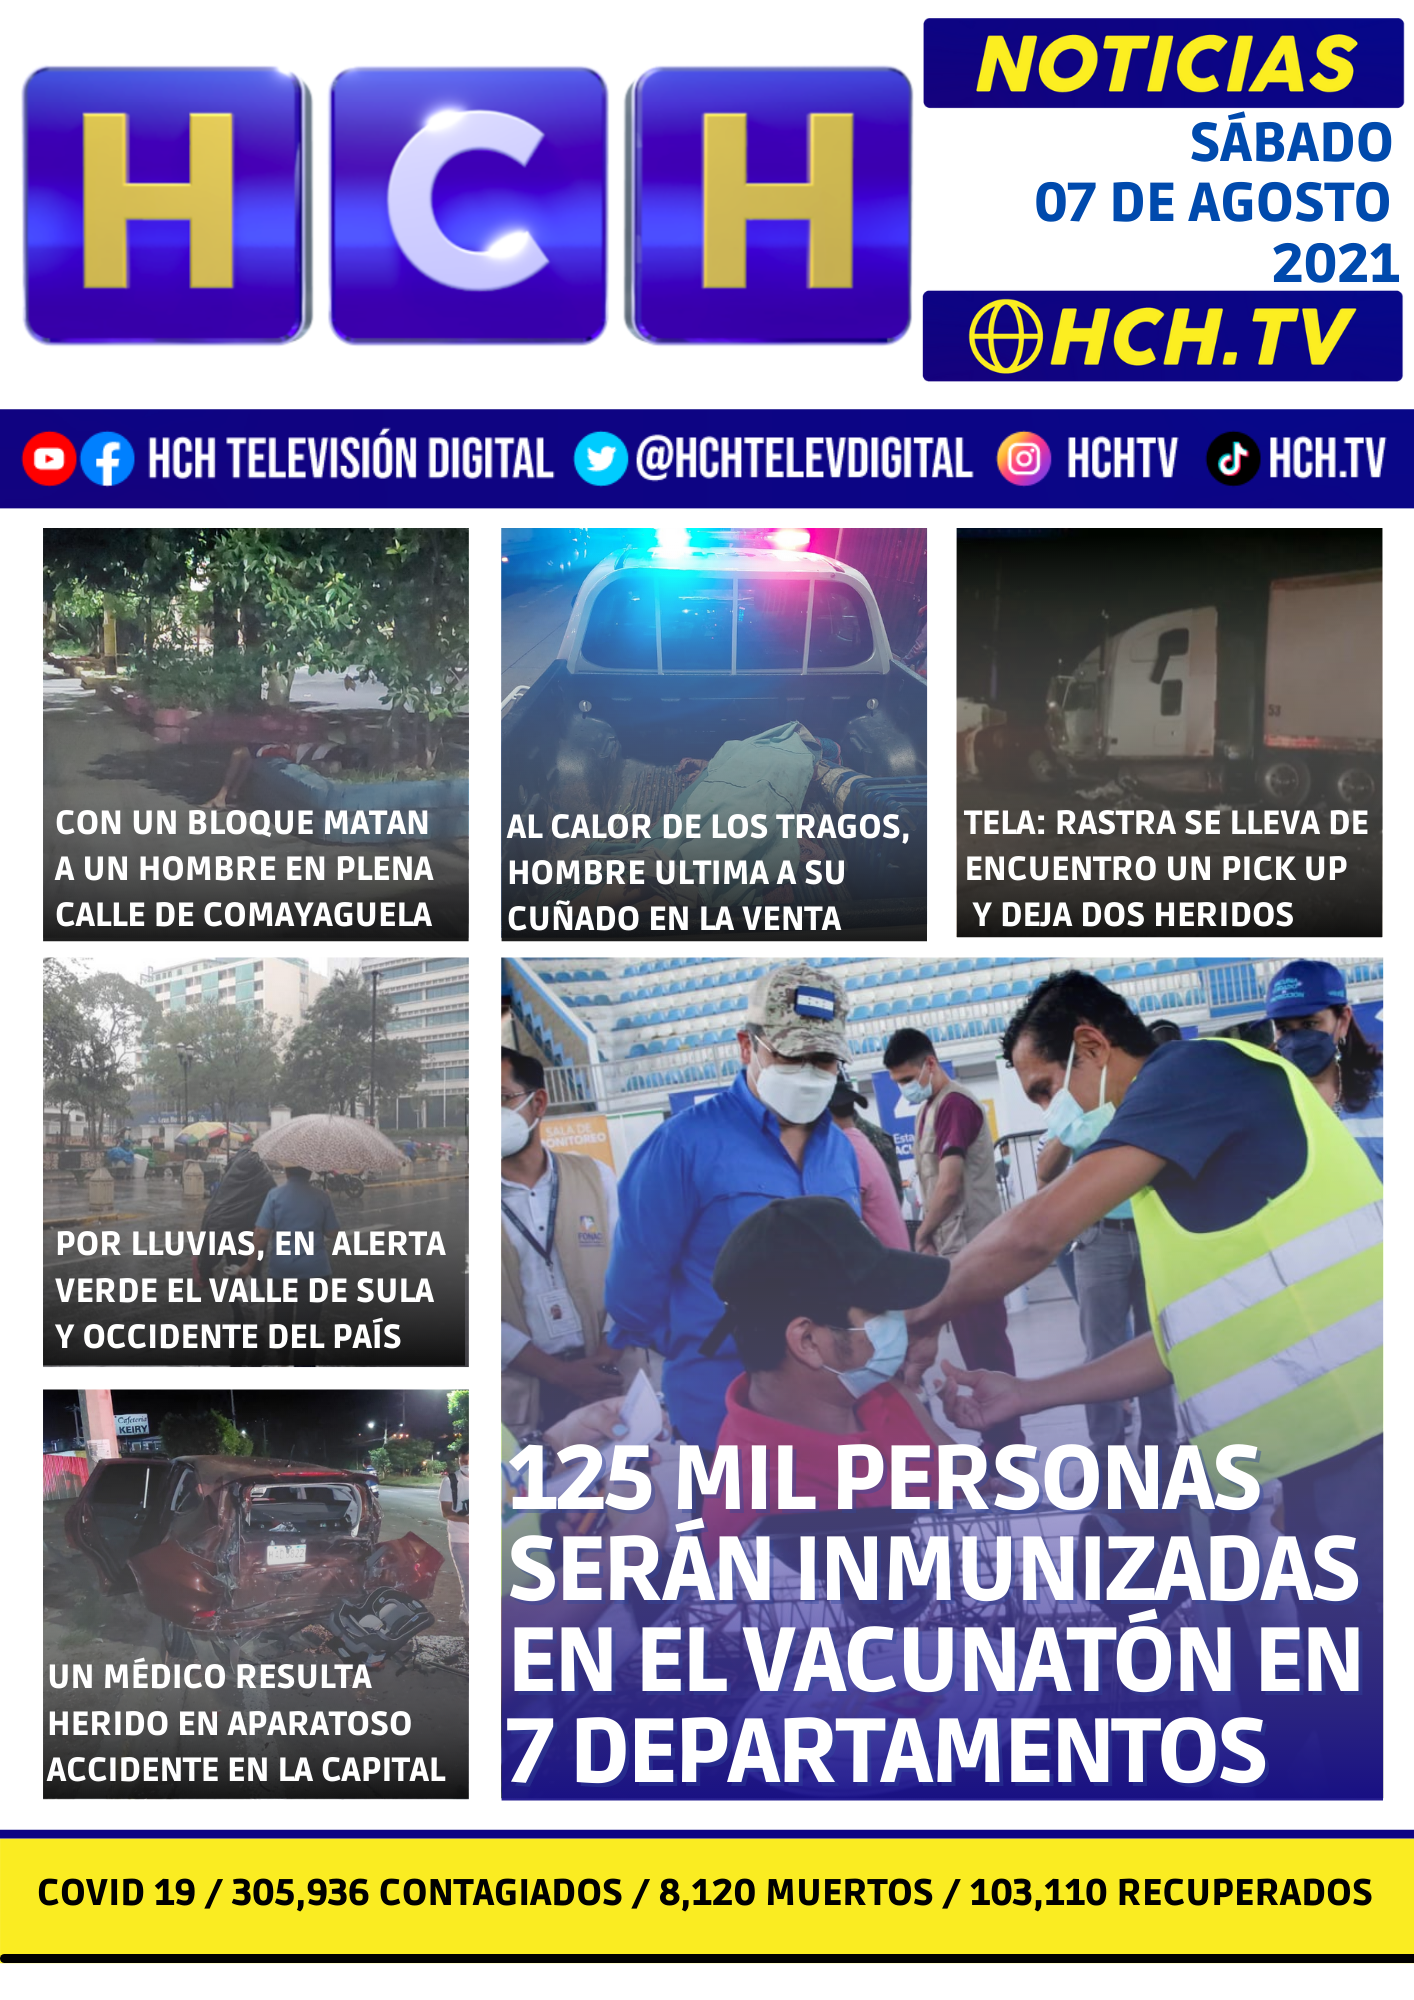 hghgh -   Noticias de última hora y sucesos de Honduras.  Deportes, Ciencia y Entretenimiento en general.